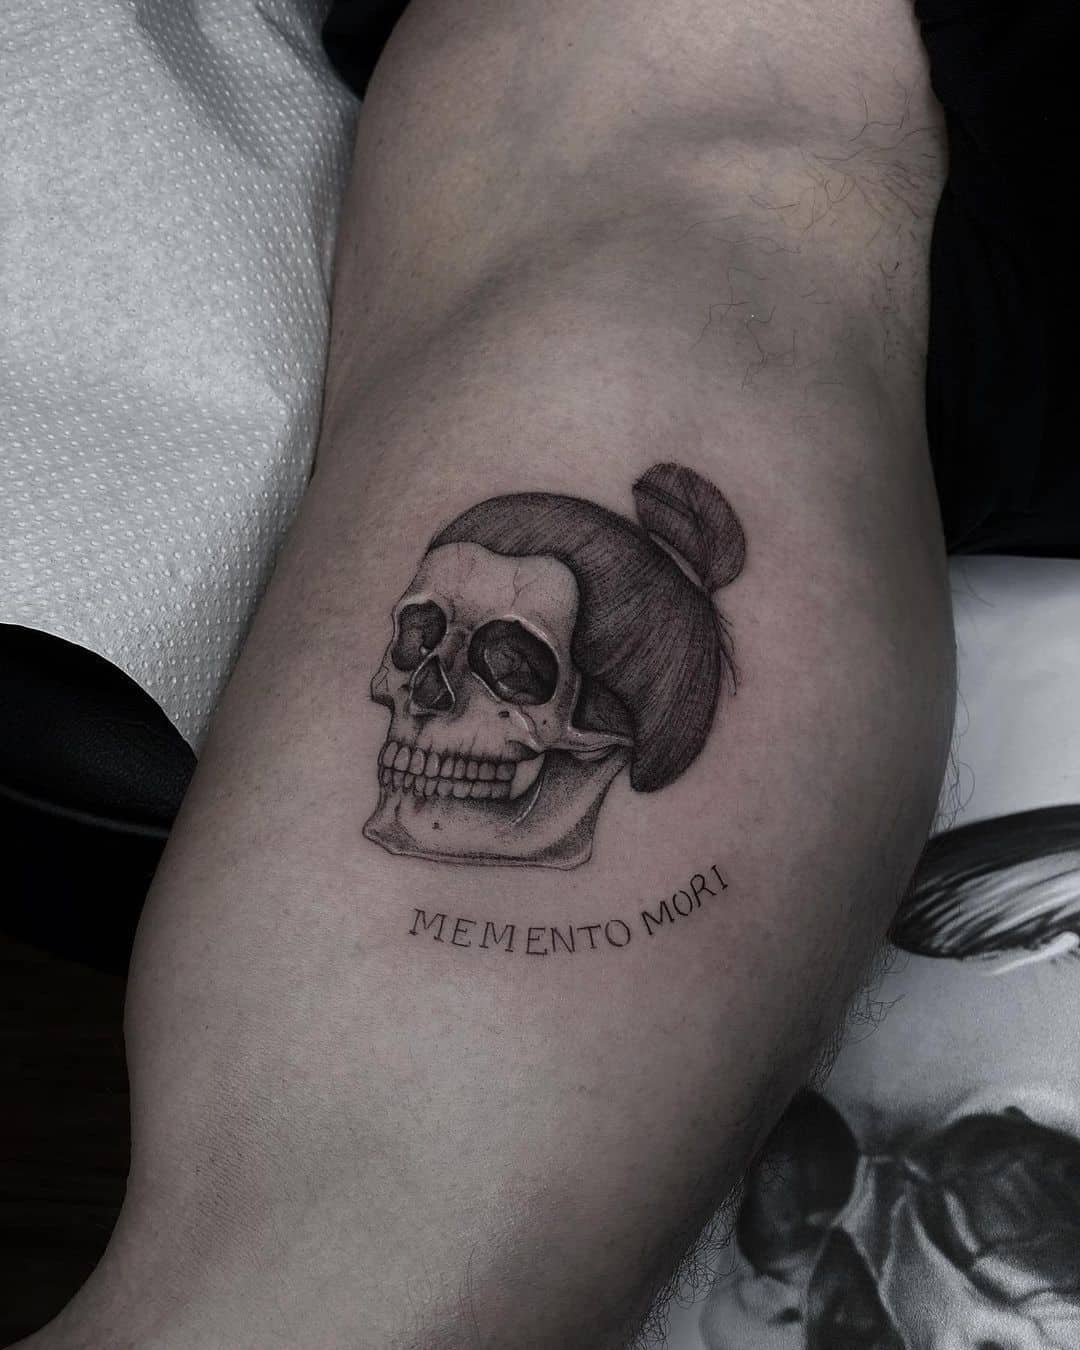 Татуировка Memento Mori